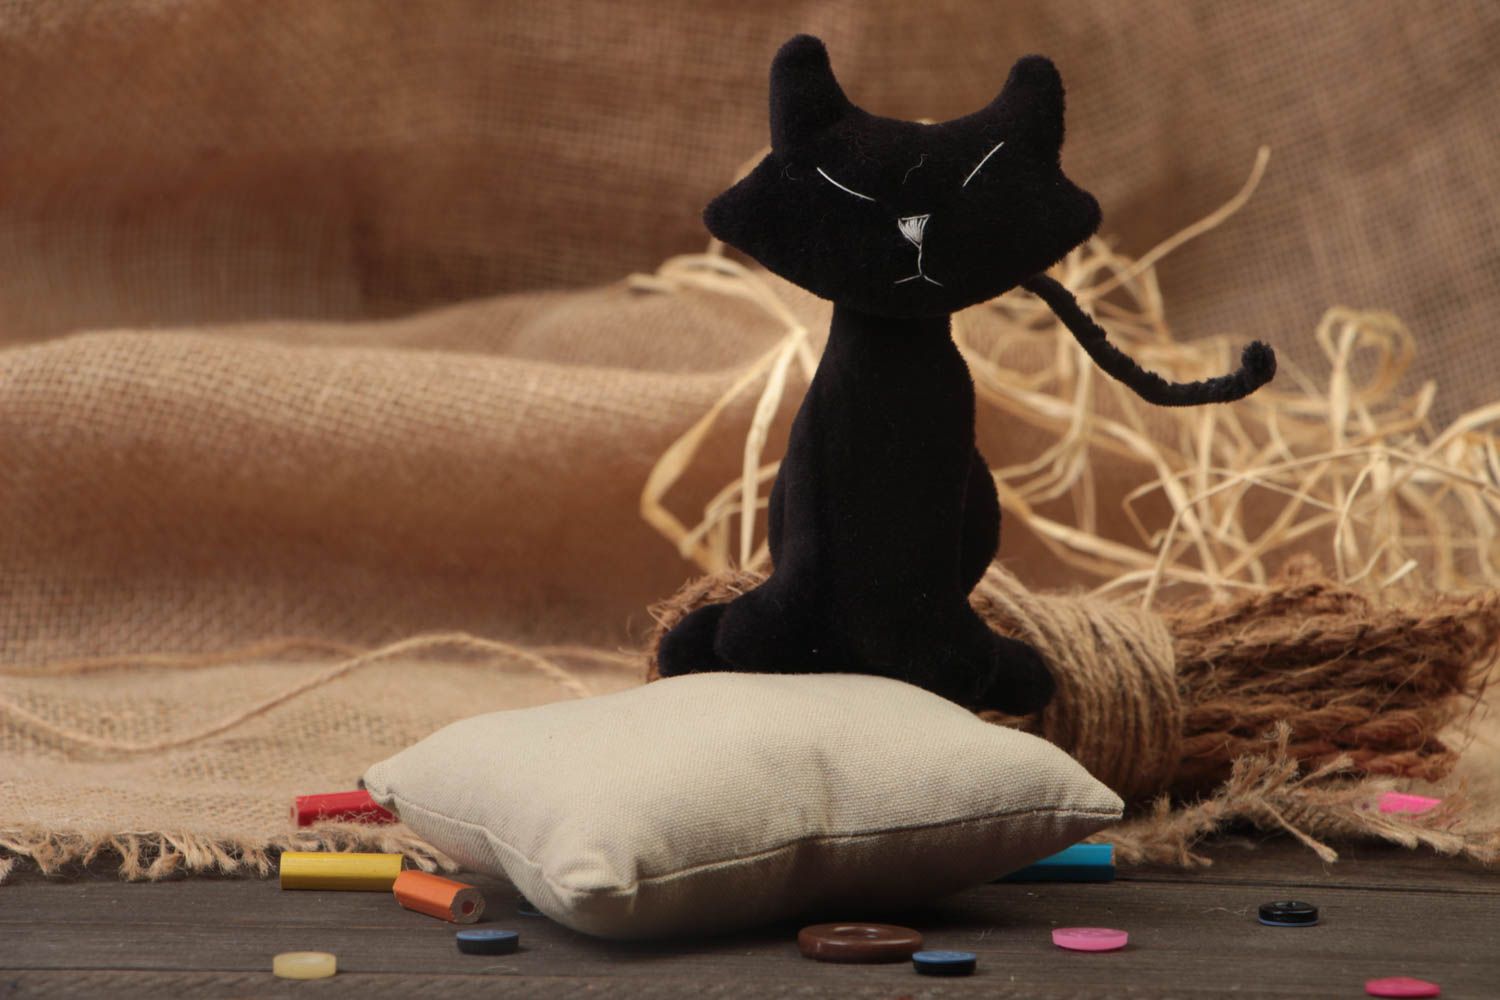 Joli jouet mou fait main en forme de chat noir en tissu polaire original photo 1